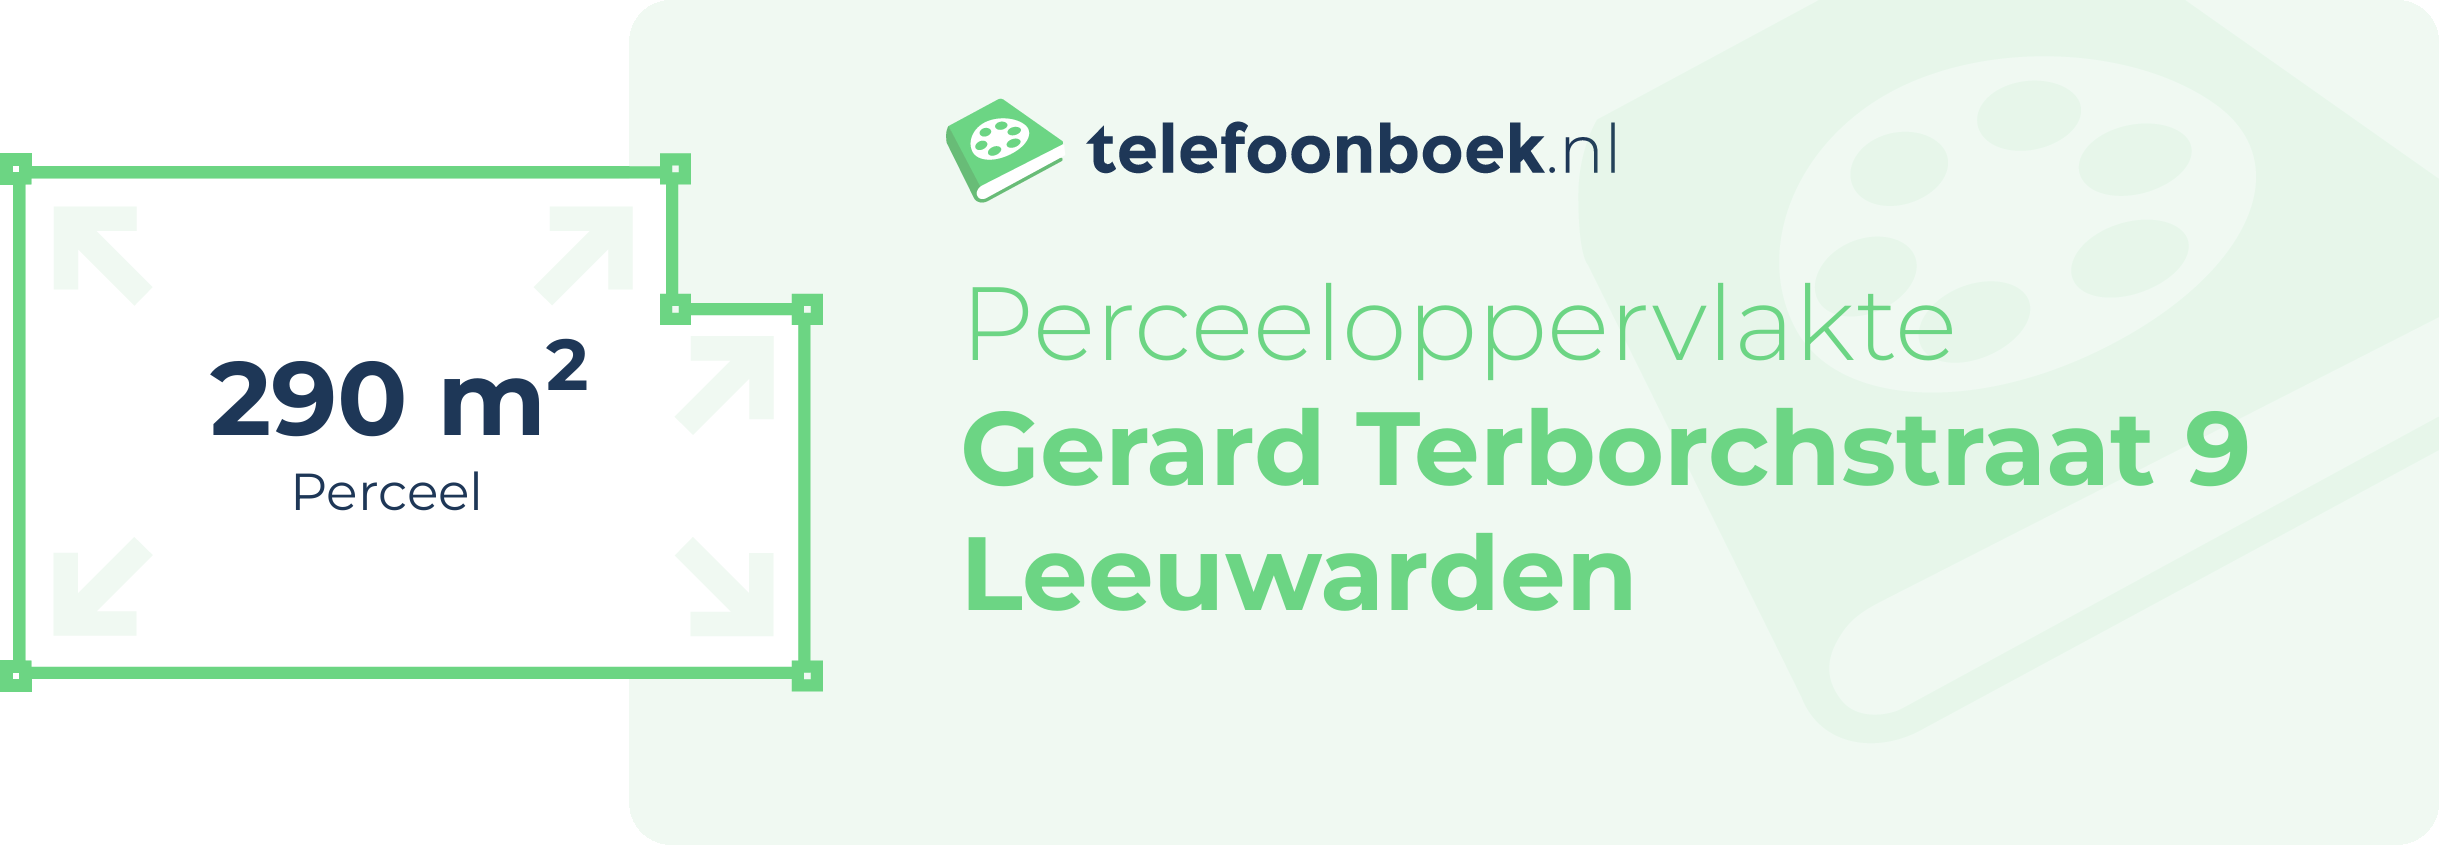 Perceeloppervlakte Gerard Terborchstraat 9 Leeuwarden